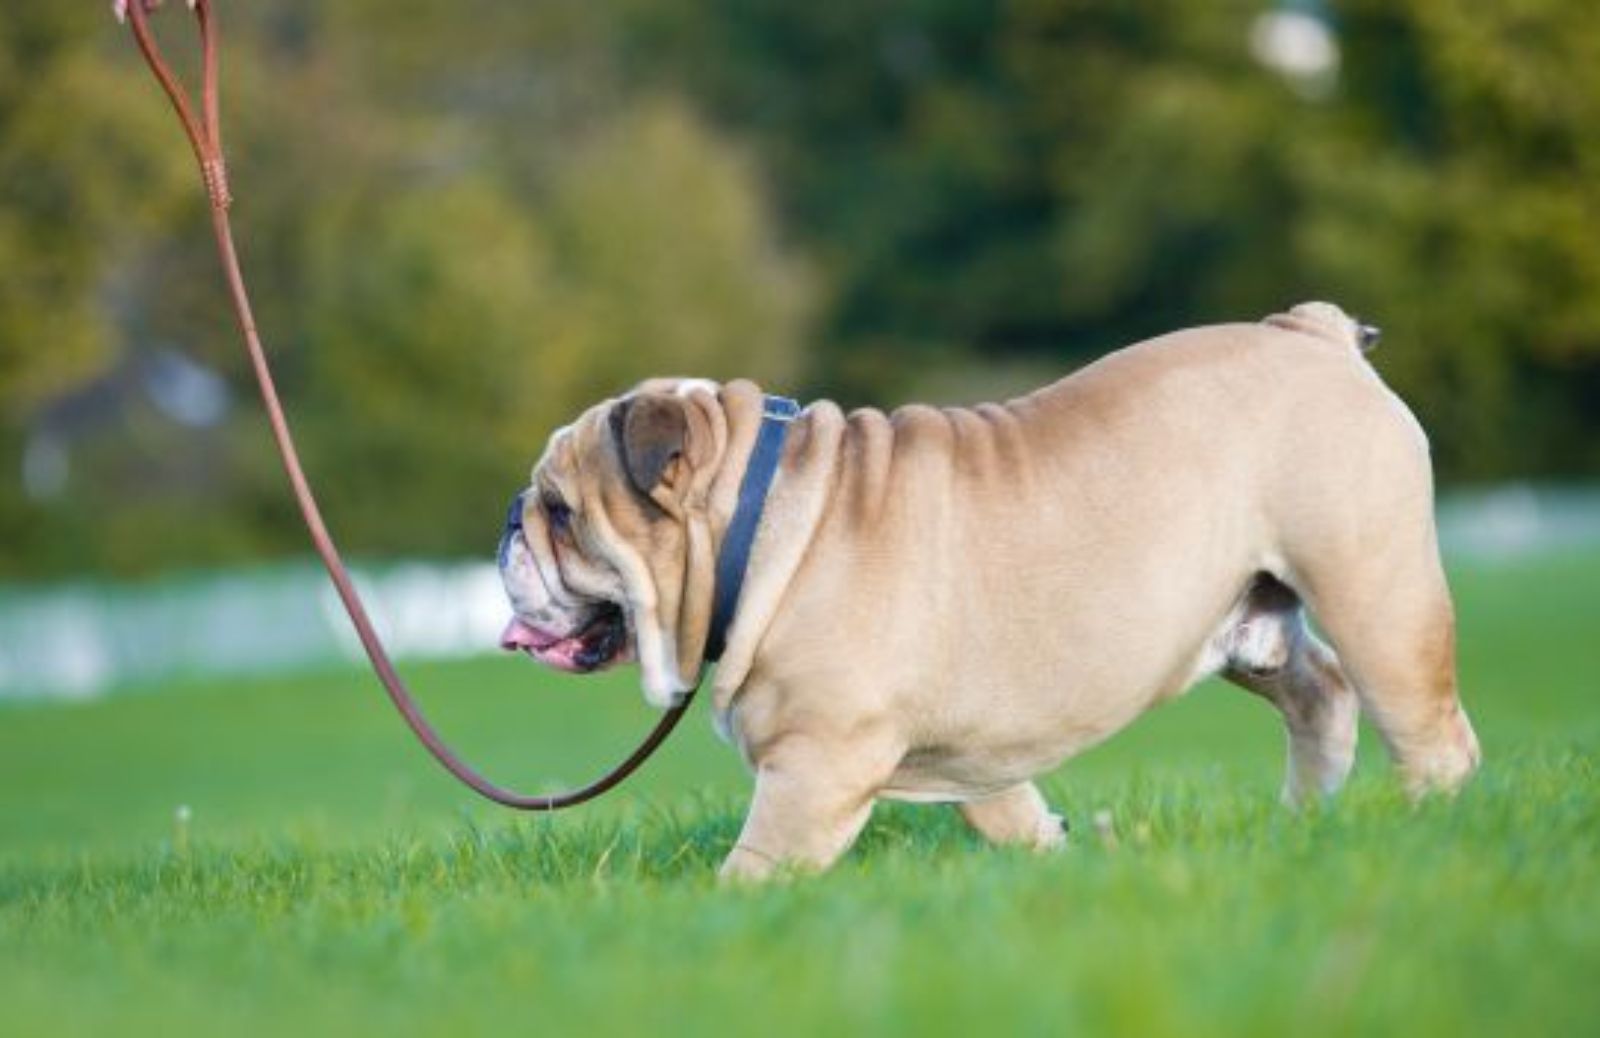 Come cambiano le regole per i proprietari di cani: guinzaglio e obbligo di museruola